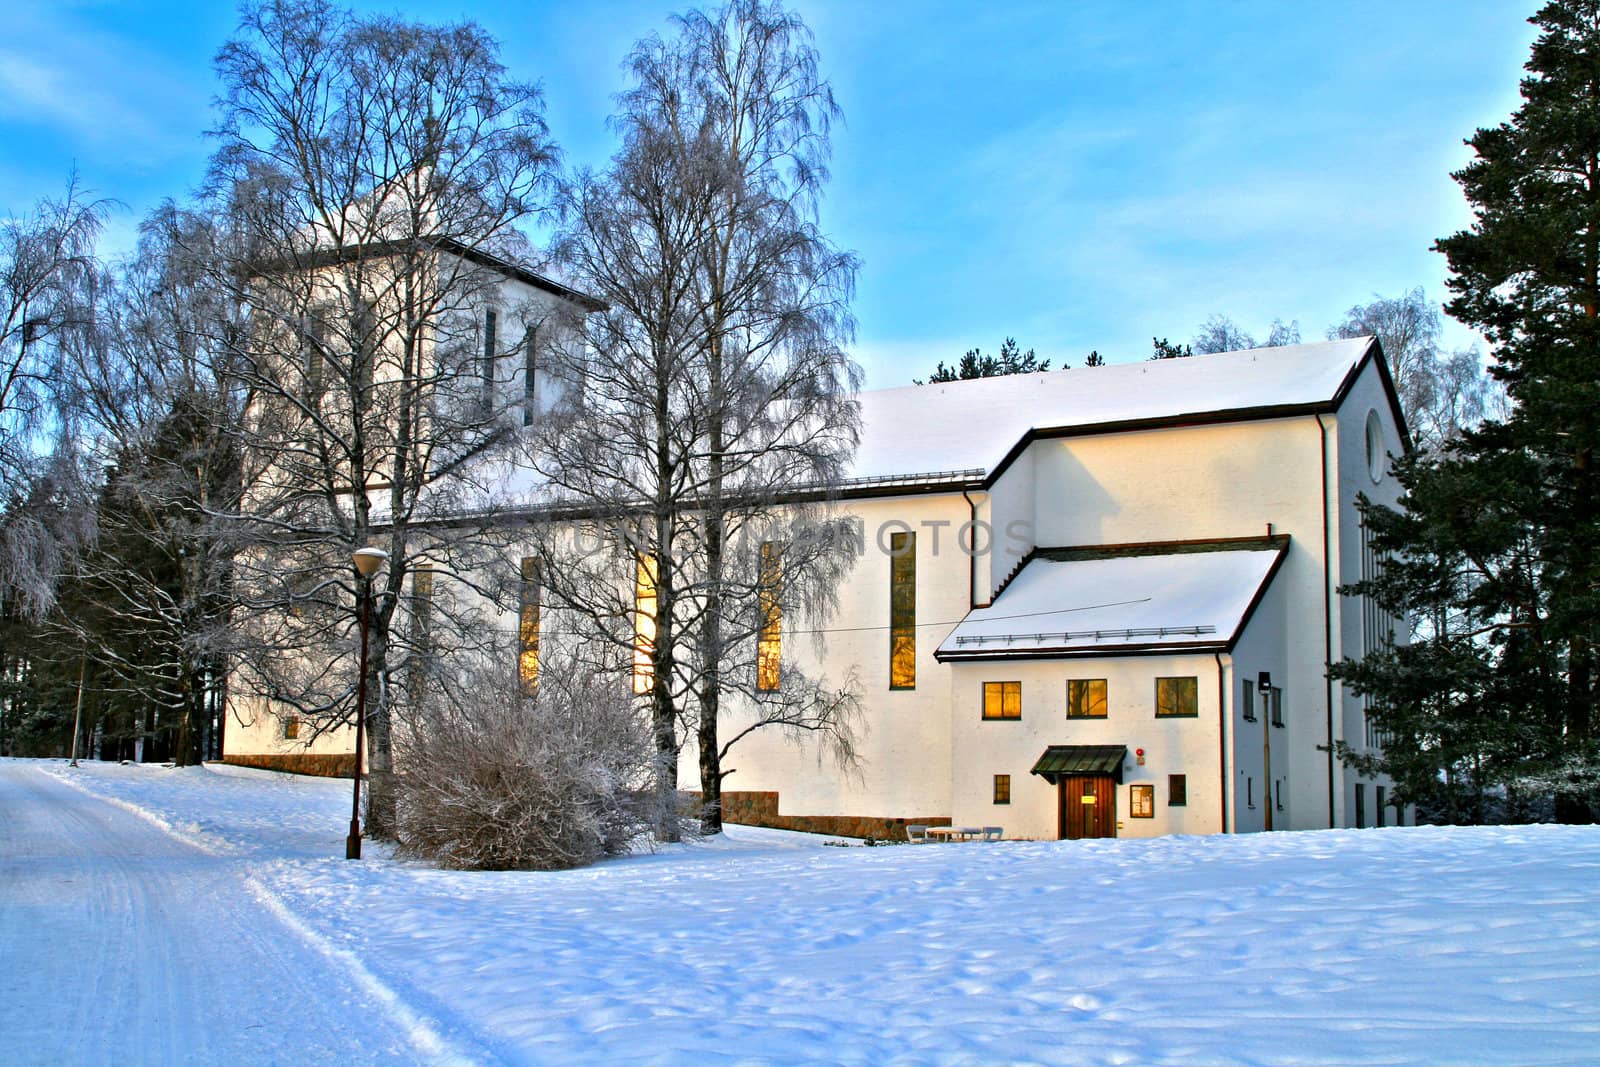 Grefsen kirke in Oslo Norway